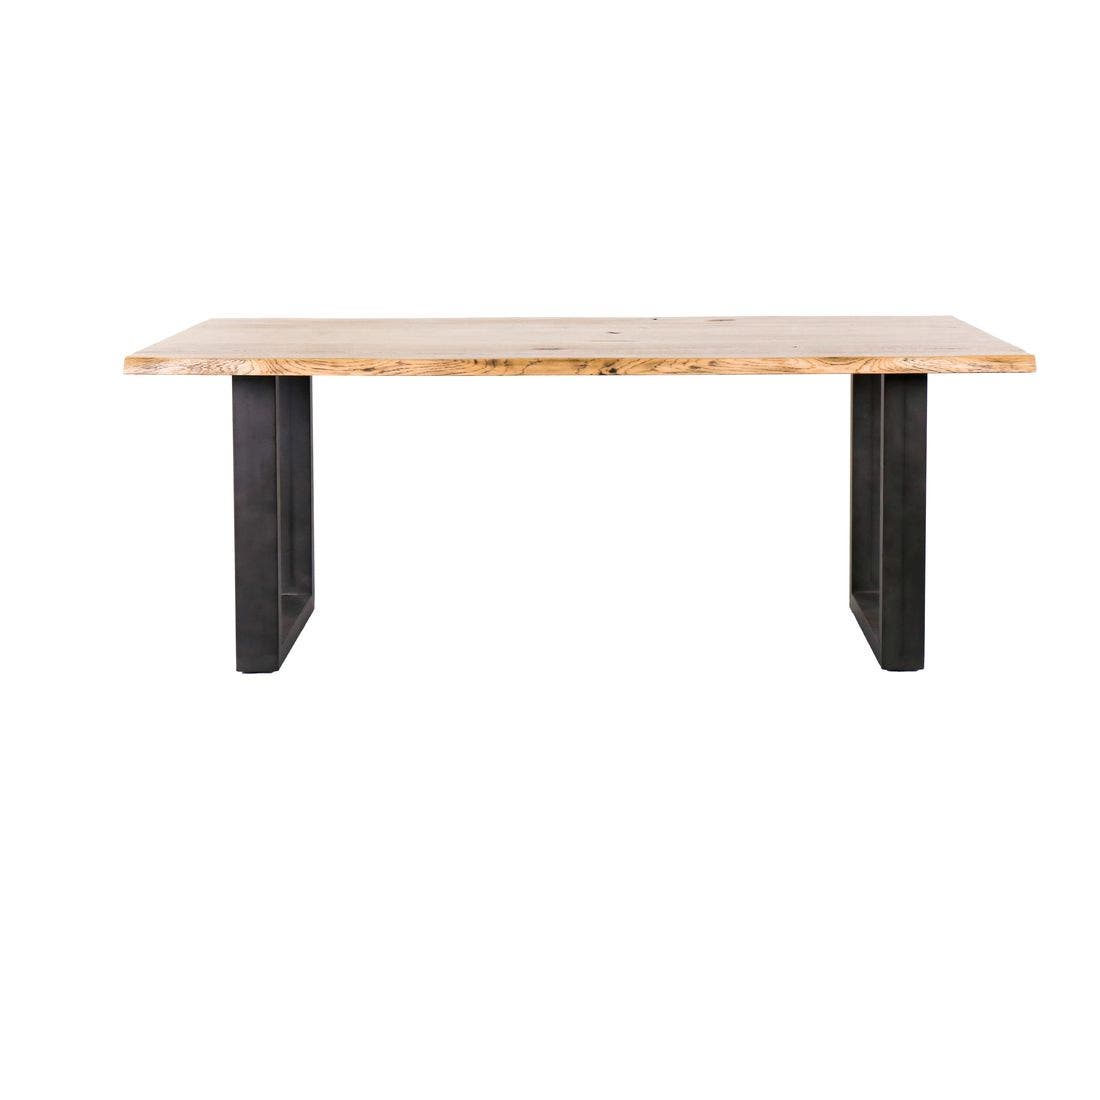 โต๊ะทานอาหาร โต๊ะอาหารขาเหล็กท๊อปไม้ รุ่น Taleno สีสีโอ๊ค-SB Design Square